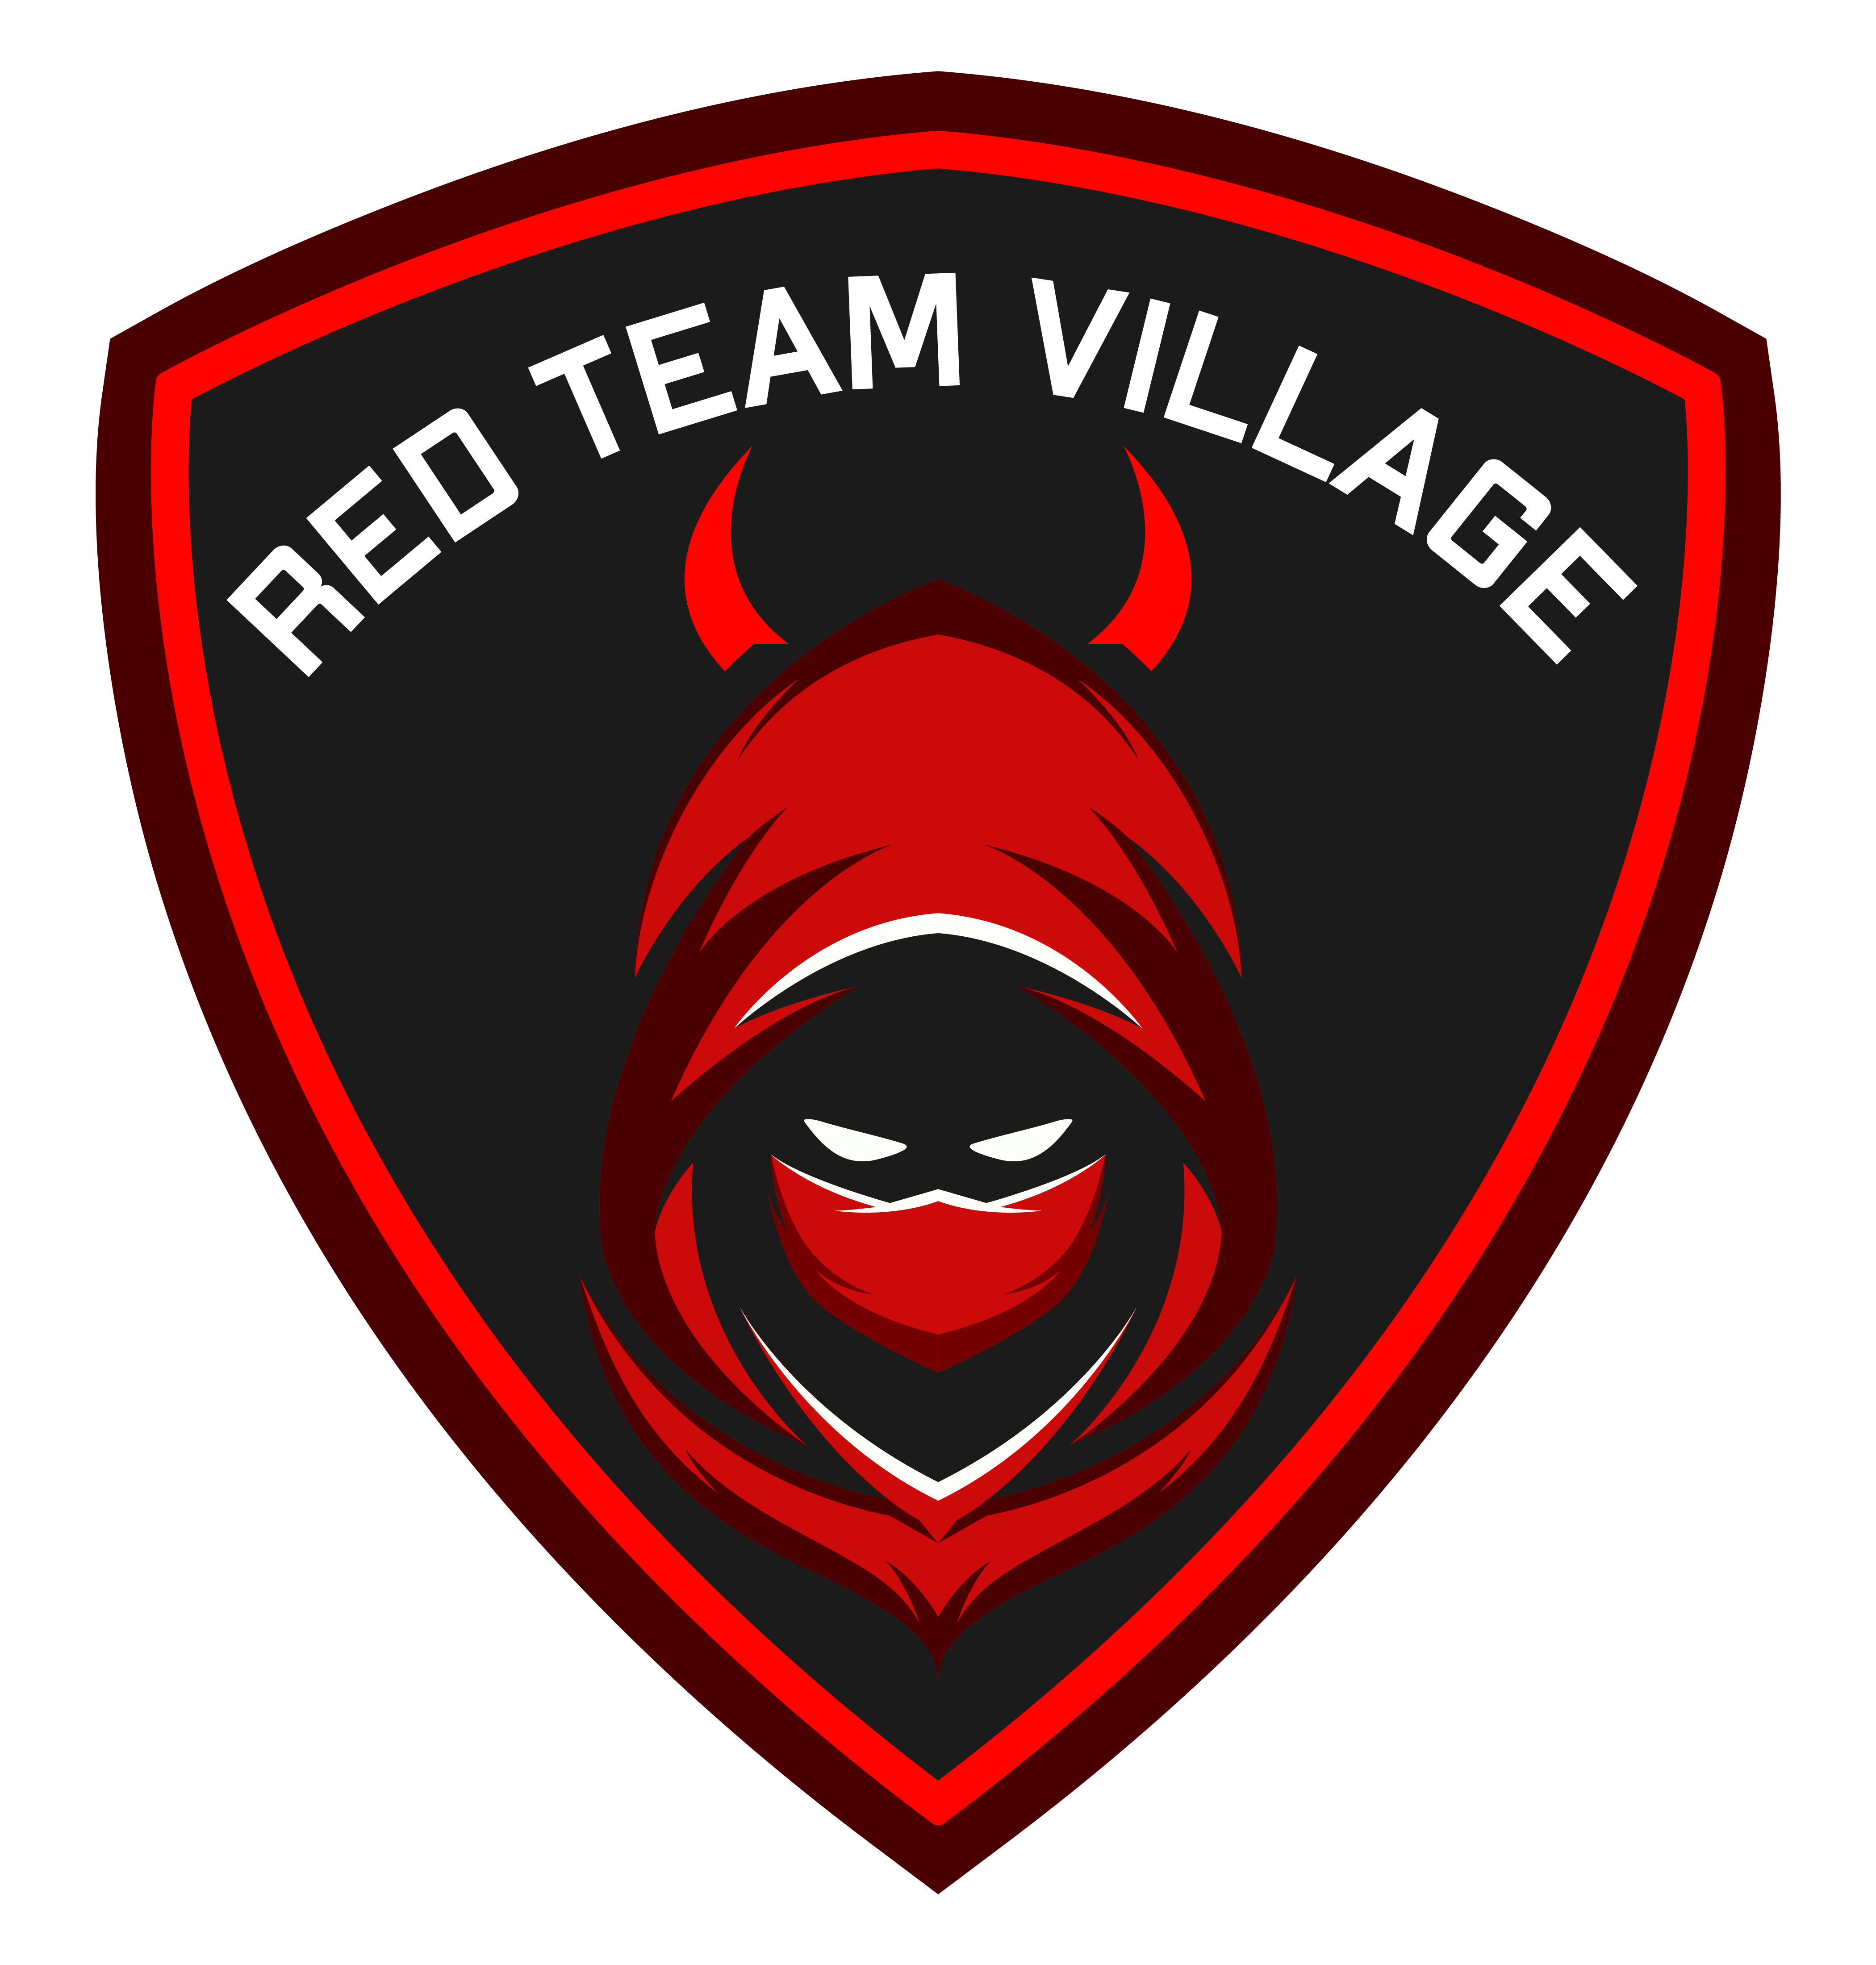 Red Team Village